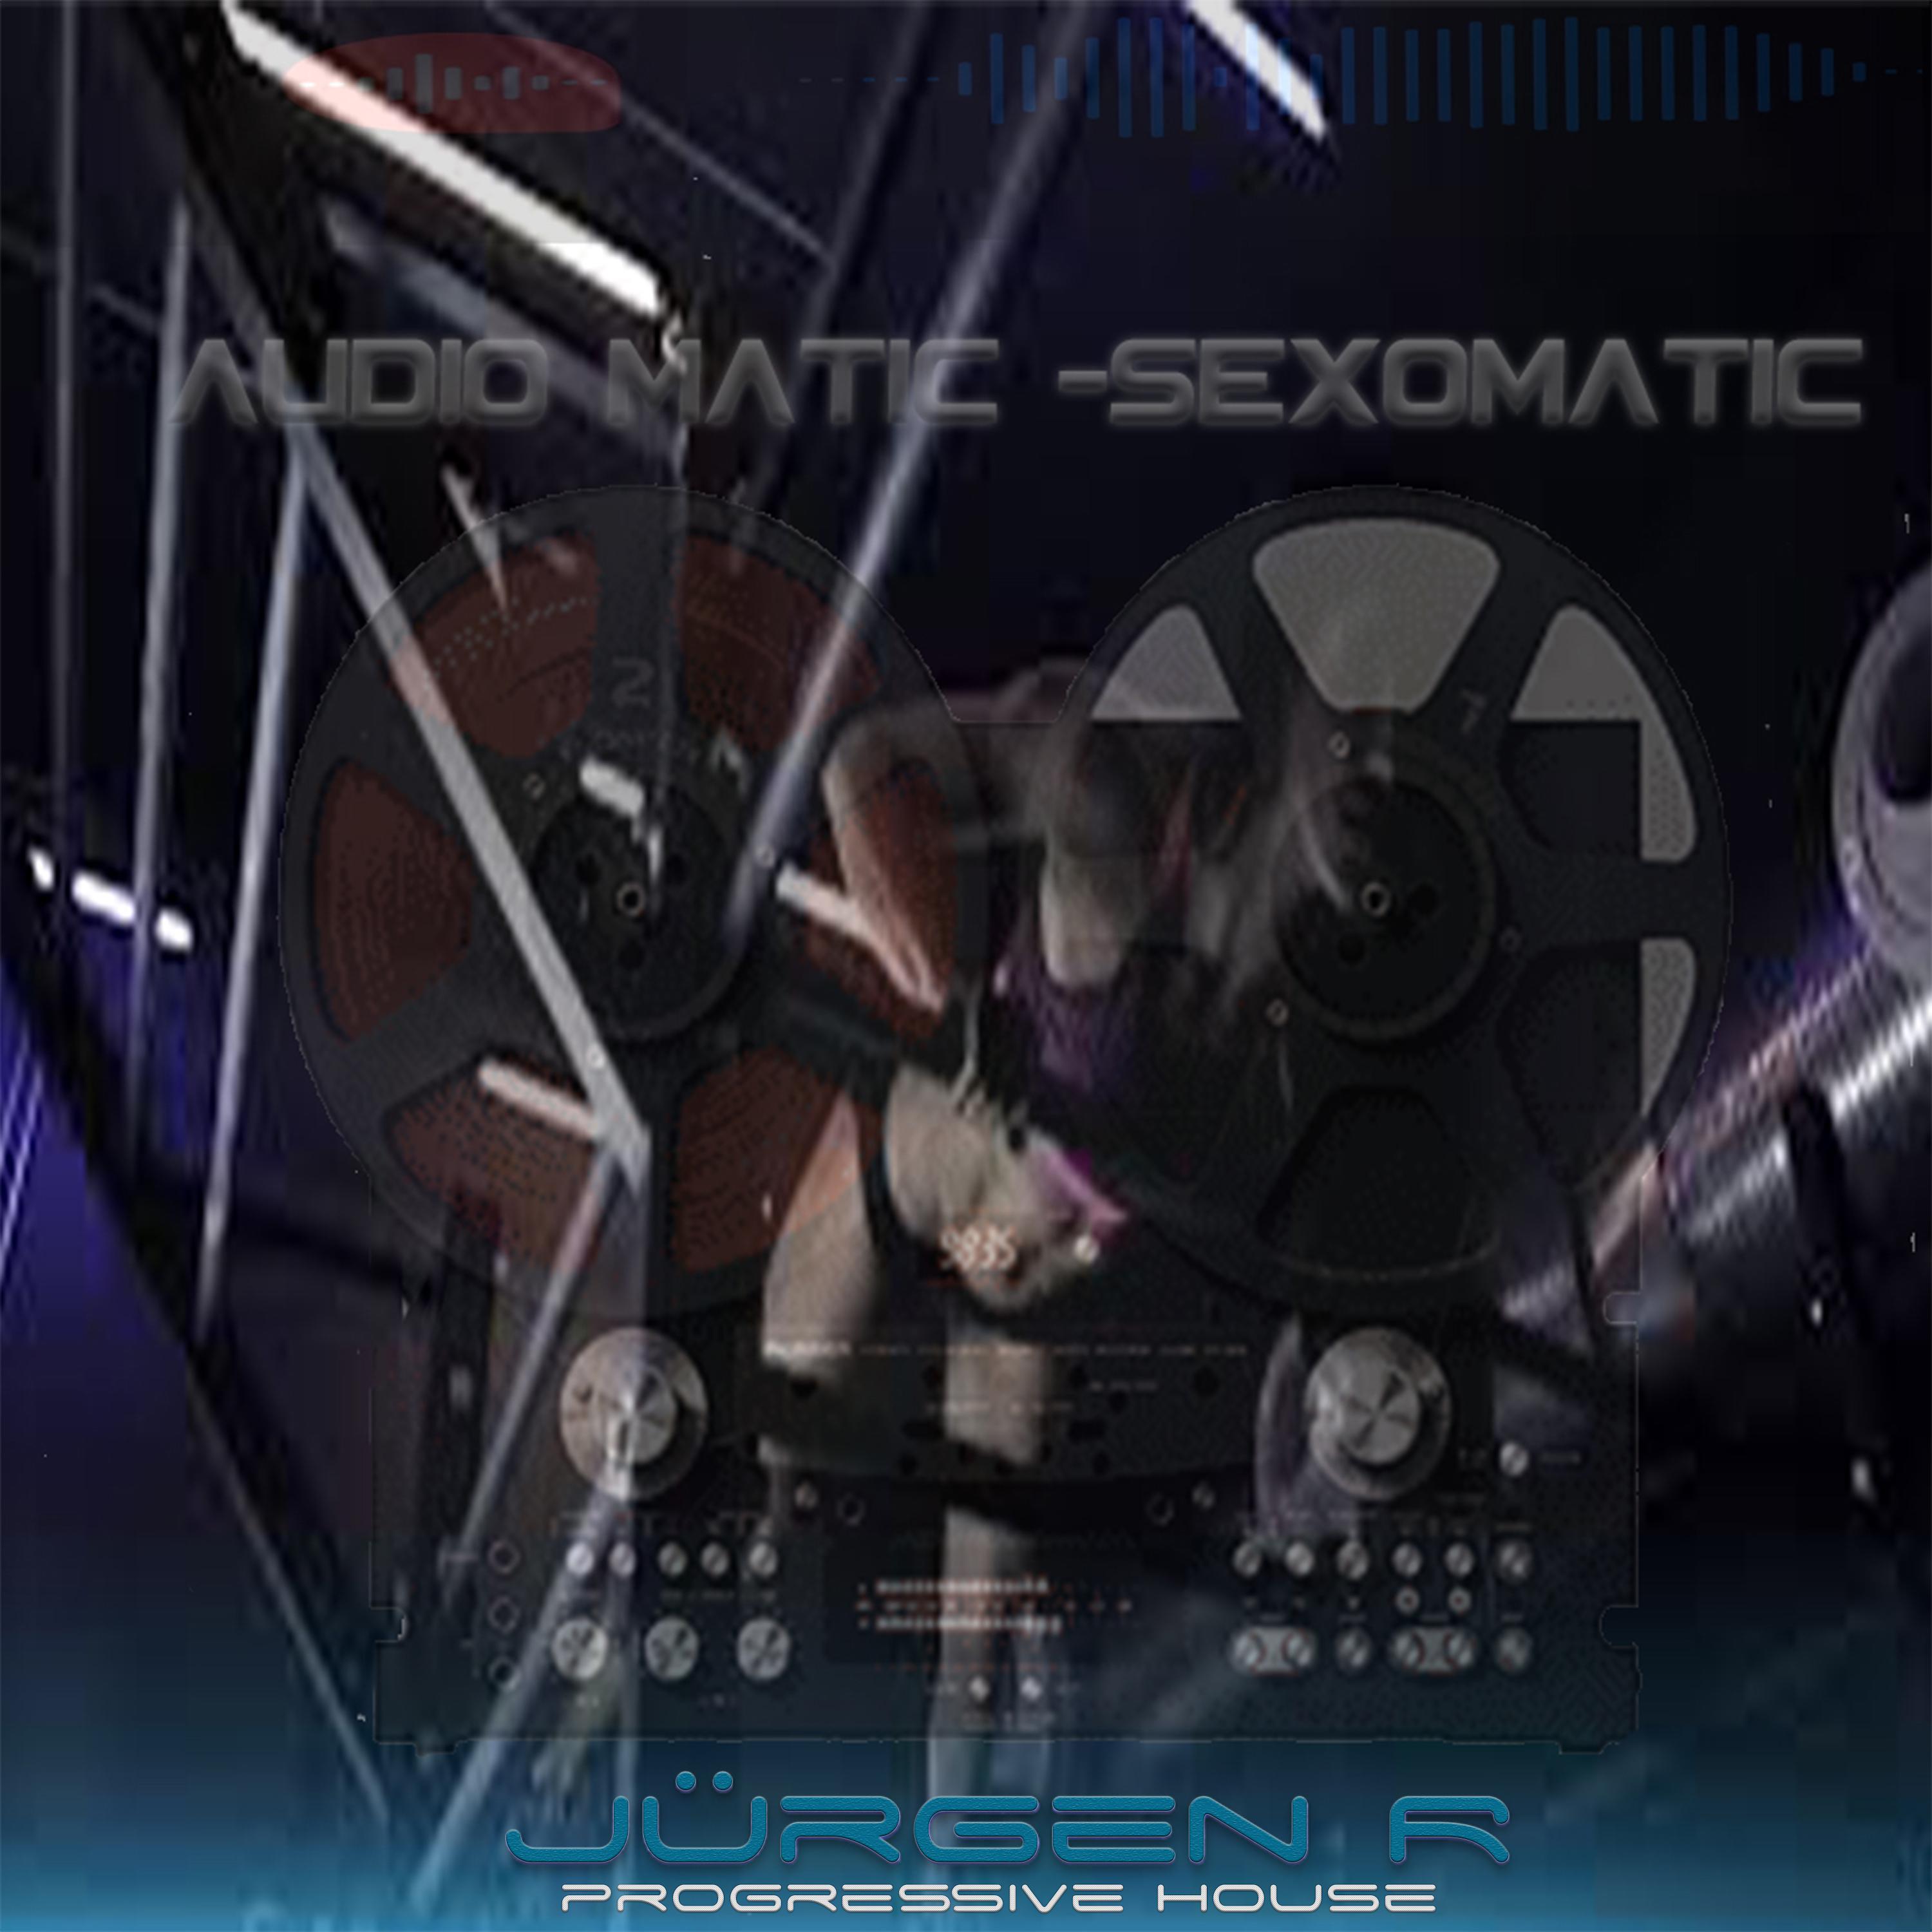 Постер альбома Audiomatic Sexomatic